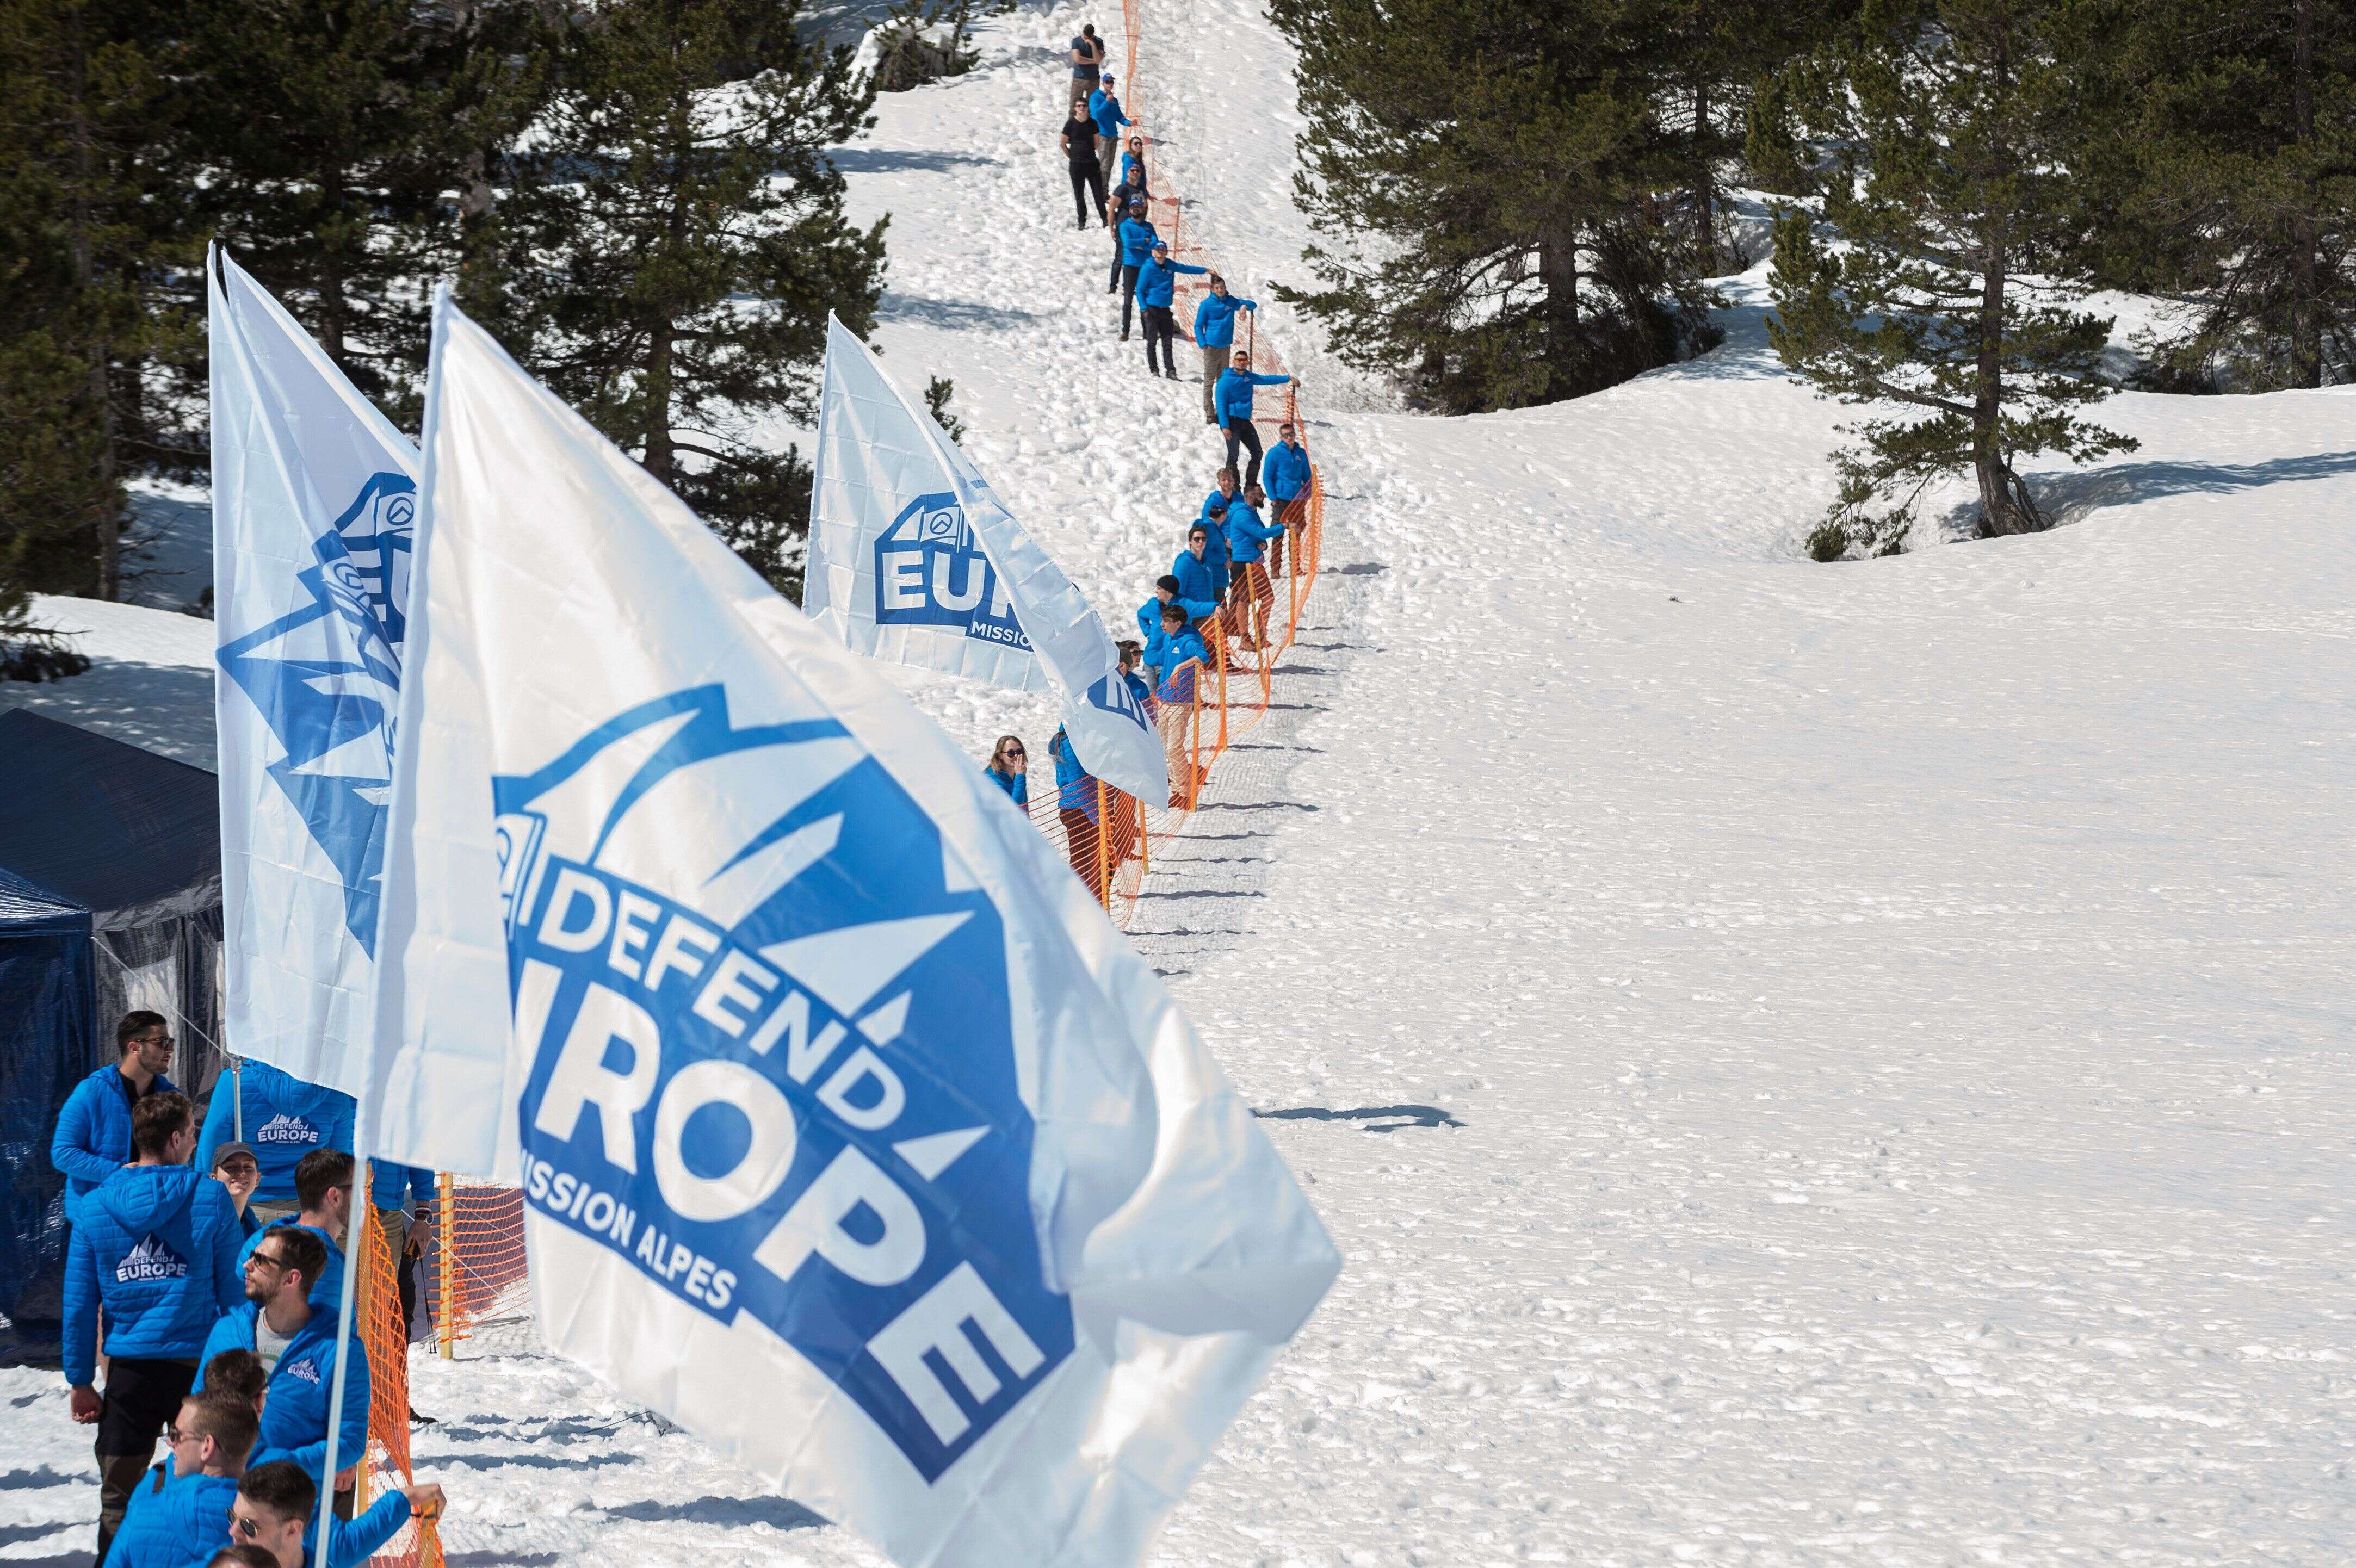 Des activistes de Génération identitaire menant une action anti-migrants dans les Alpes en avril 2018